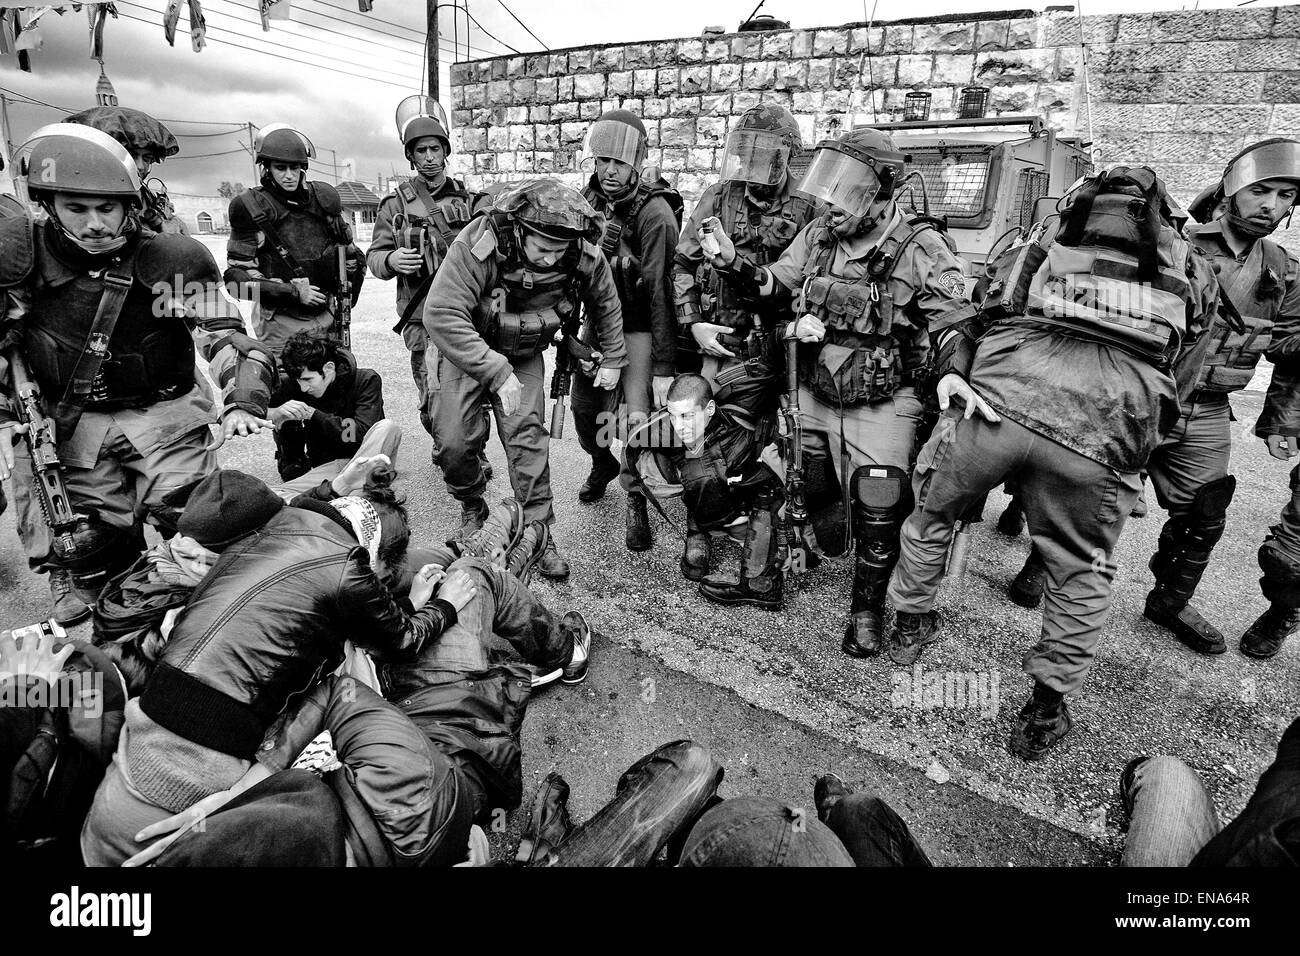 La Palestine. Mar 25, 2011. Un groupe international de militants sont arrêtés, ce qui déclenche le chaos dans le village de Nabi Saleh. Au cours de la mêlée, les forces israéliennes ont utilisé des gaz lacrymogènes, des grenades à concussion et de poivre de cayenne pour reprendre le contrôle. Mar. 25, 2011. Cisjordanie, Palestine. © Gabriel Romero/ZUMA/Alamy Fil Live News Banque D'Images